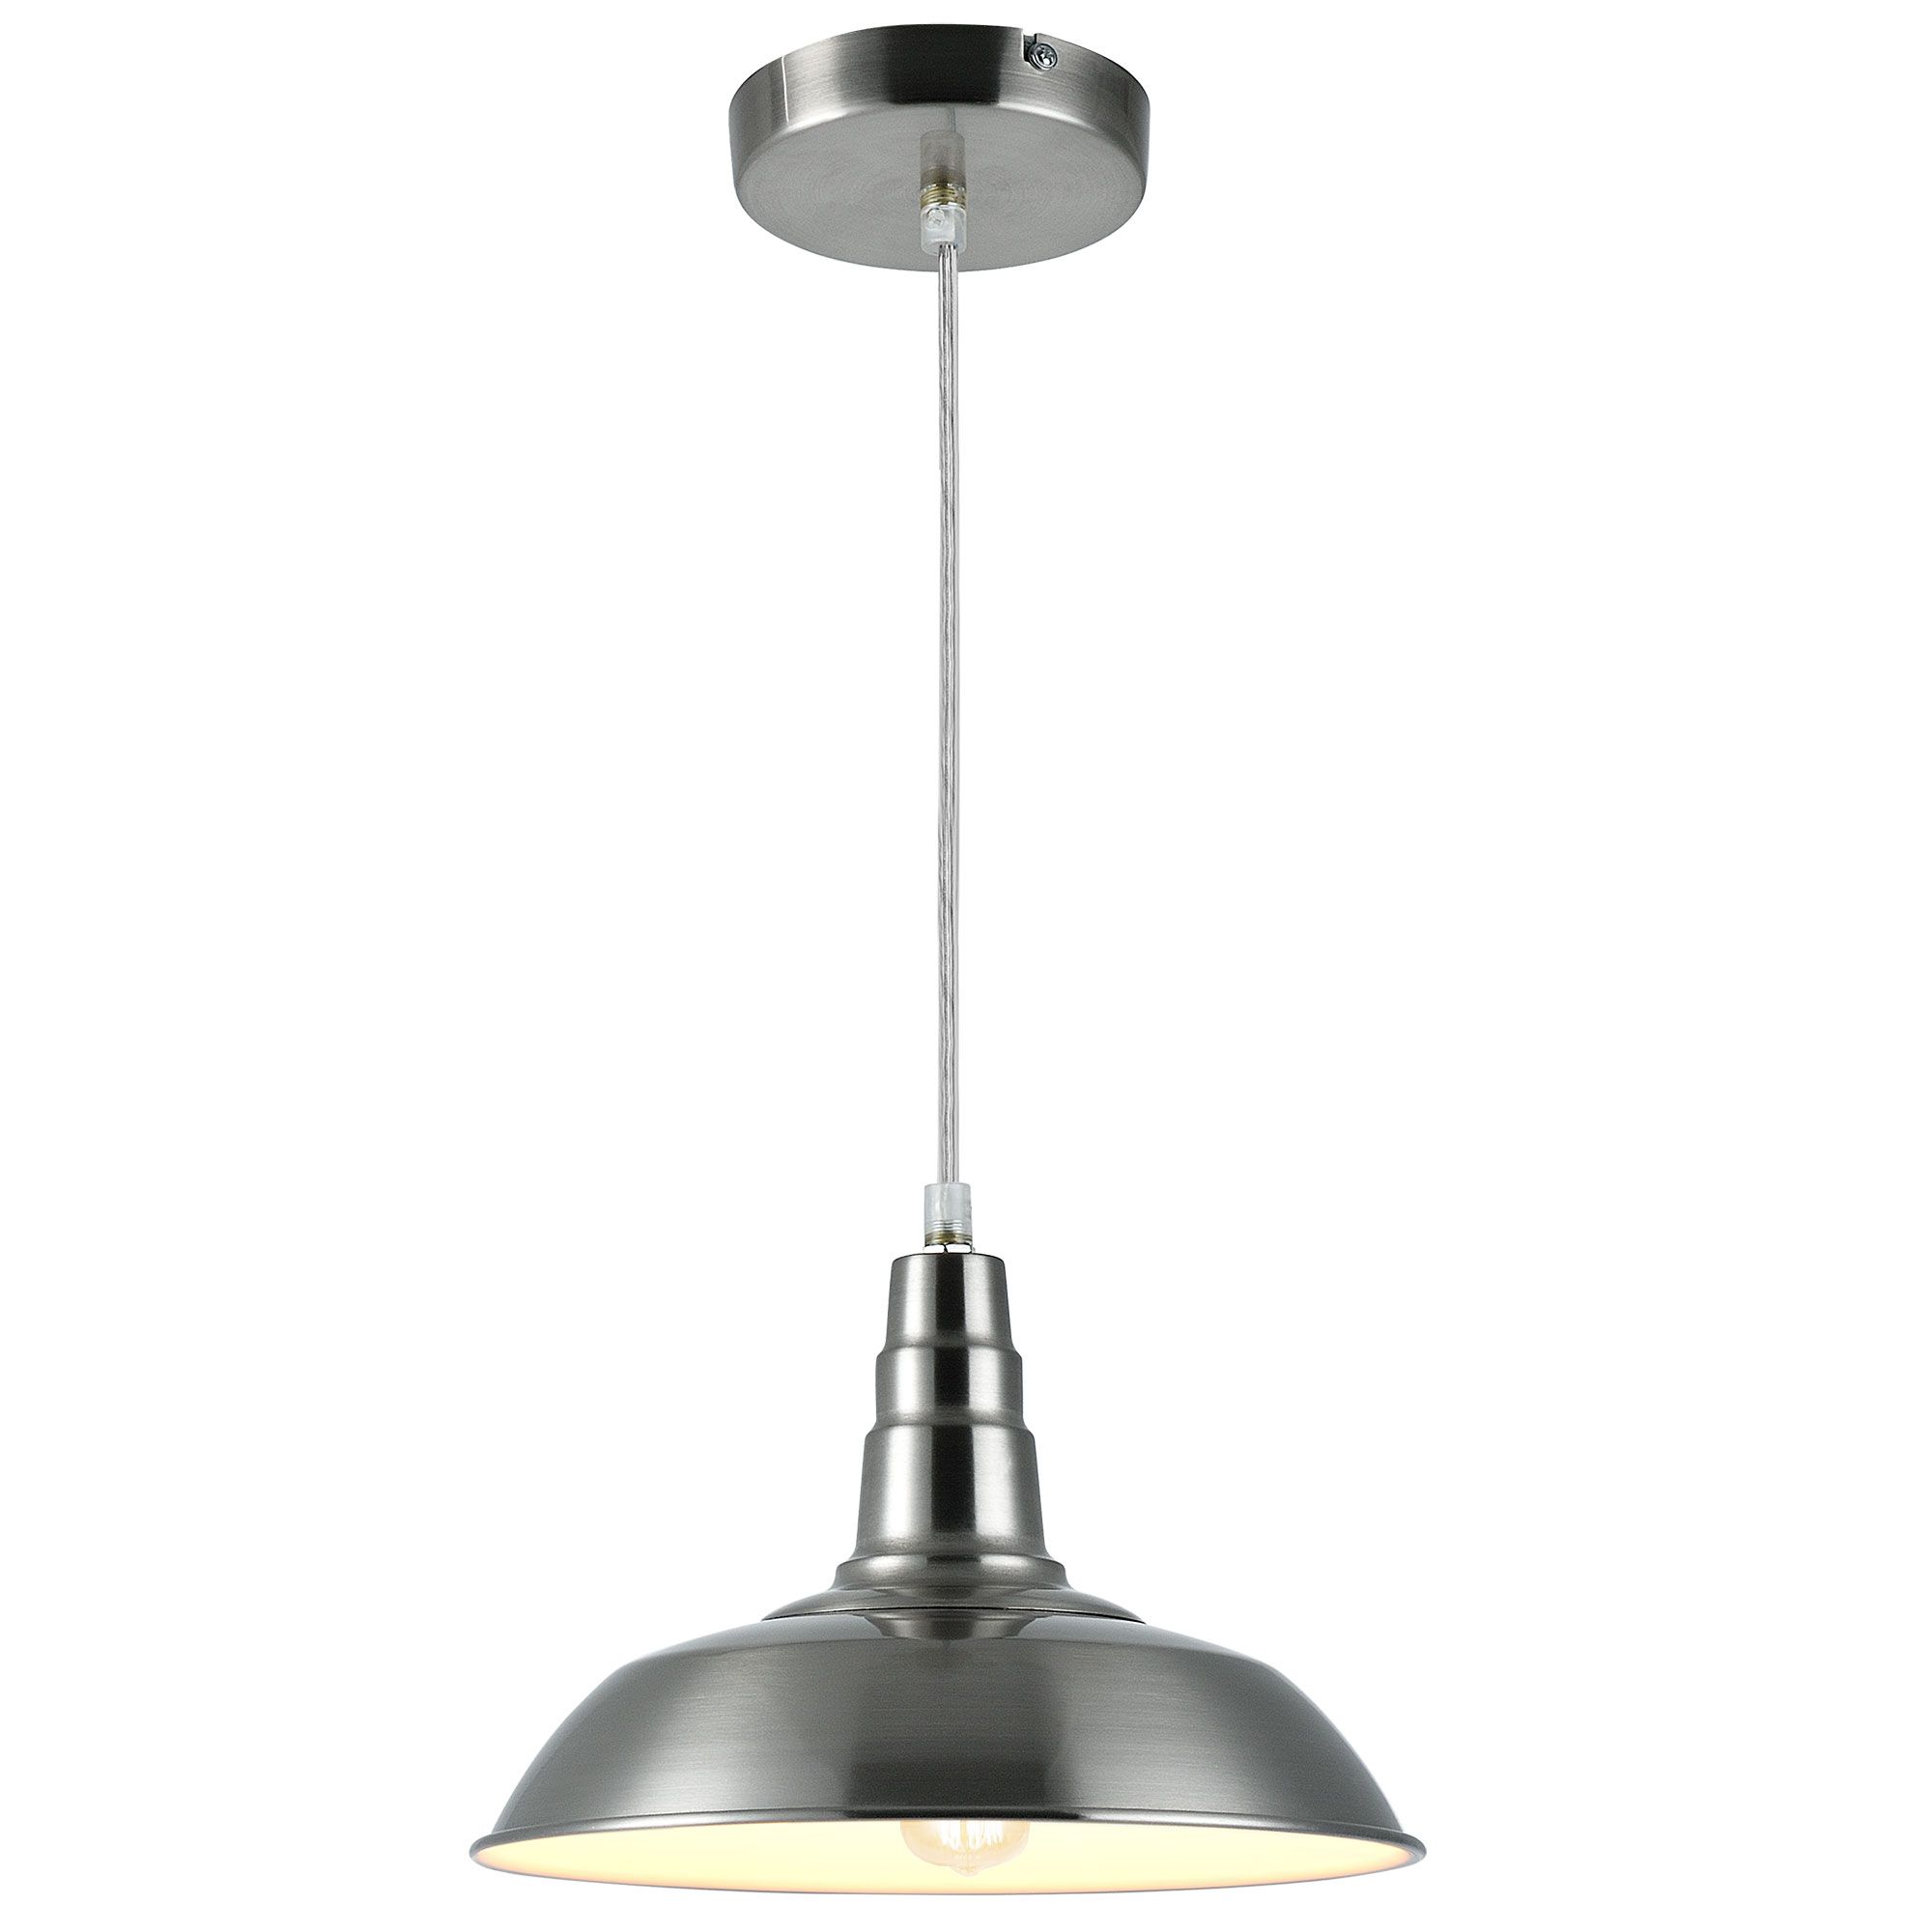 [lux.pro]® Dekoratívní designové závěsné svítidlo / stropní svítidlo - stříbrno-bílé (1 x E27) HT168169 - H.T. Trade Service GmbH & Co. KG